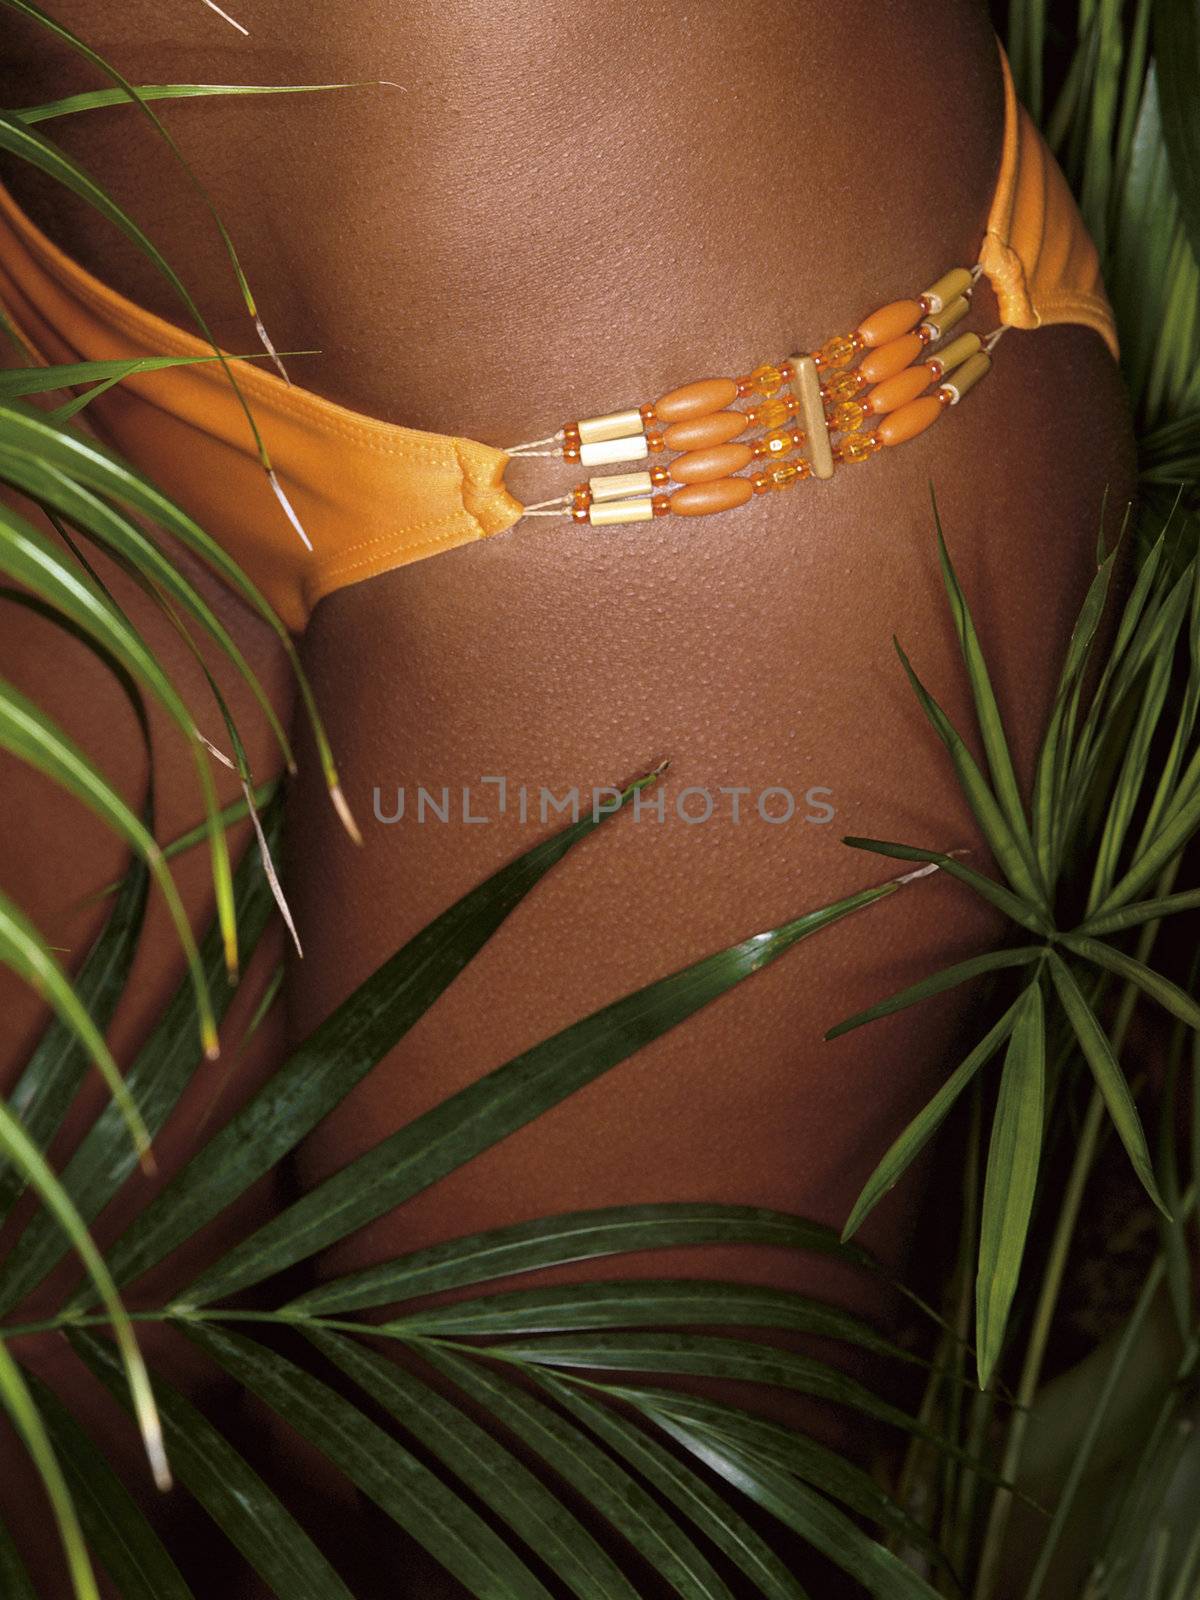 photo of girl thighs in orange bikini by jackmalipan